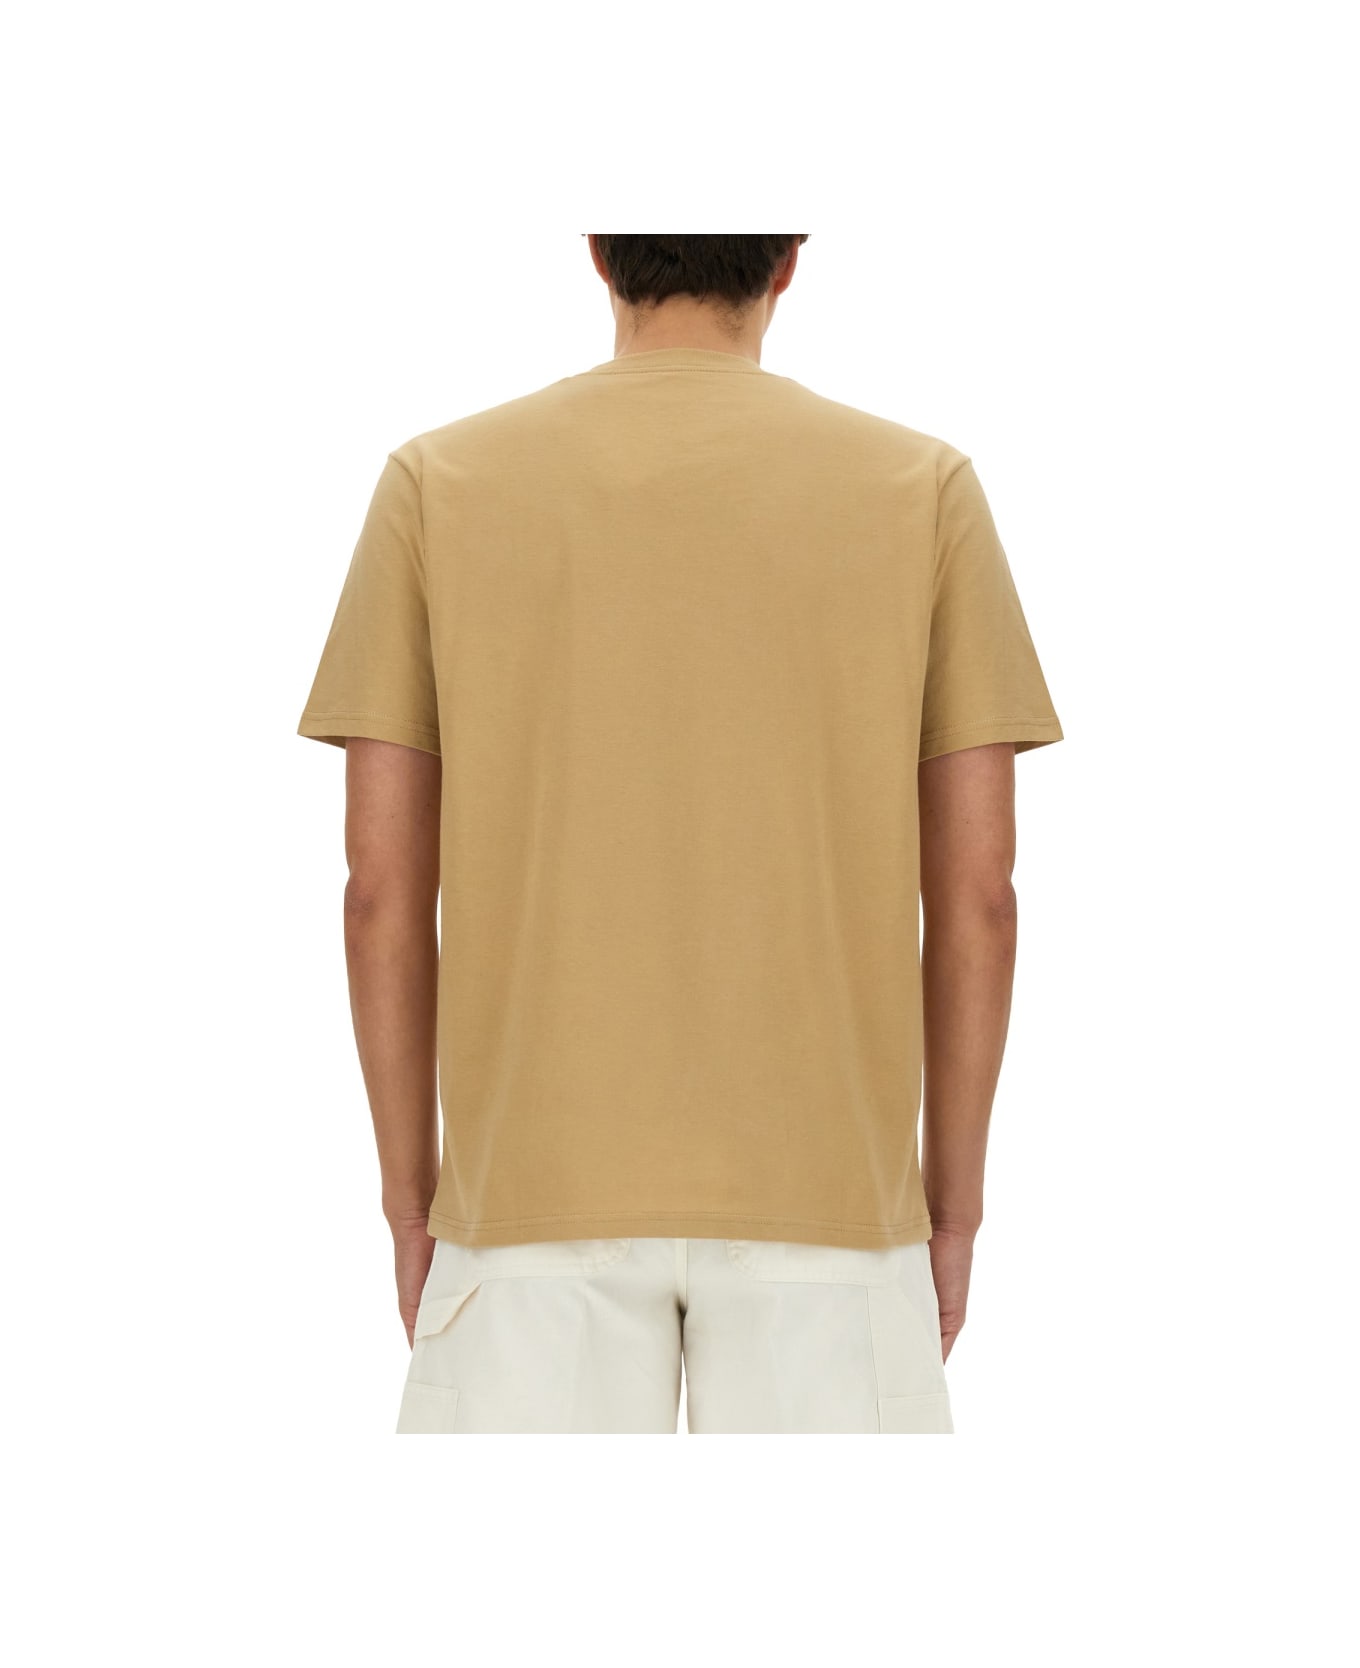 Carhartt T-shirt "palette" - BEIGE